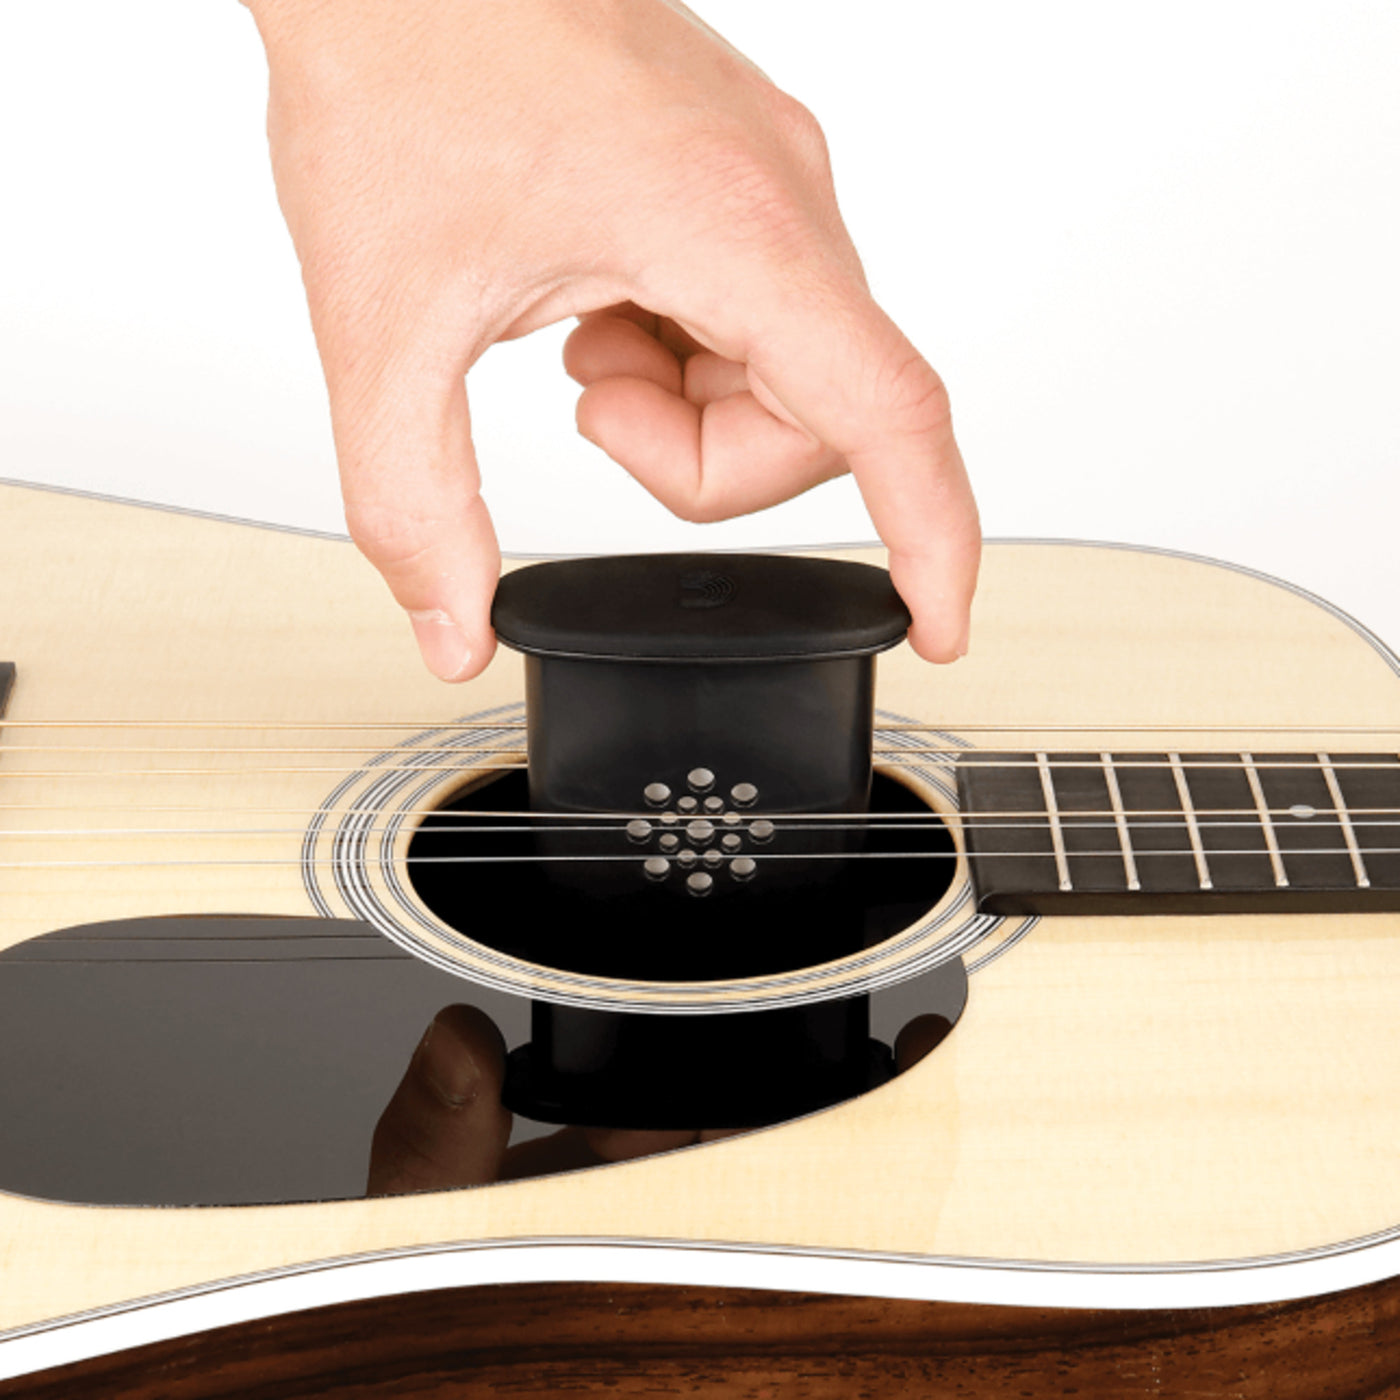 D'Addario Acoustic Guitar Humidifier Pro (GHP)